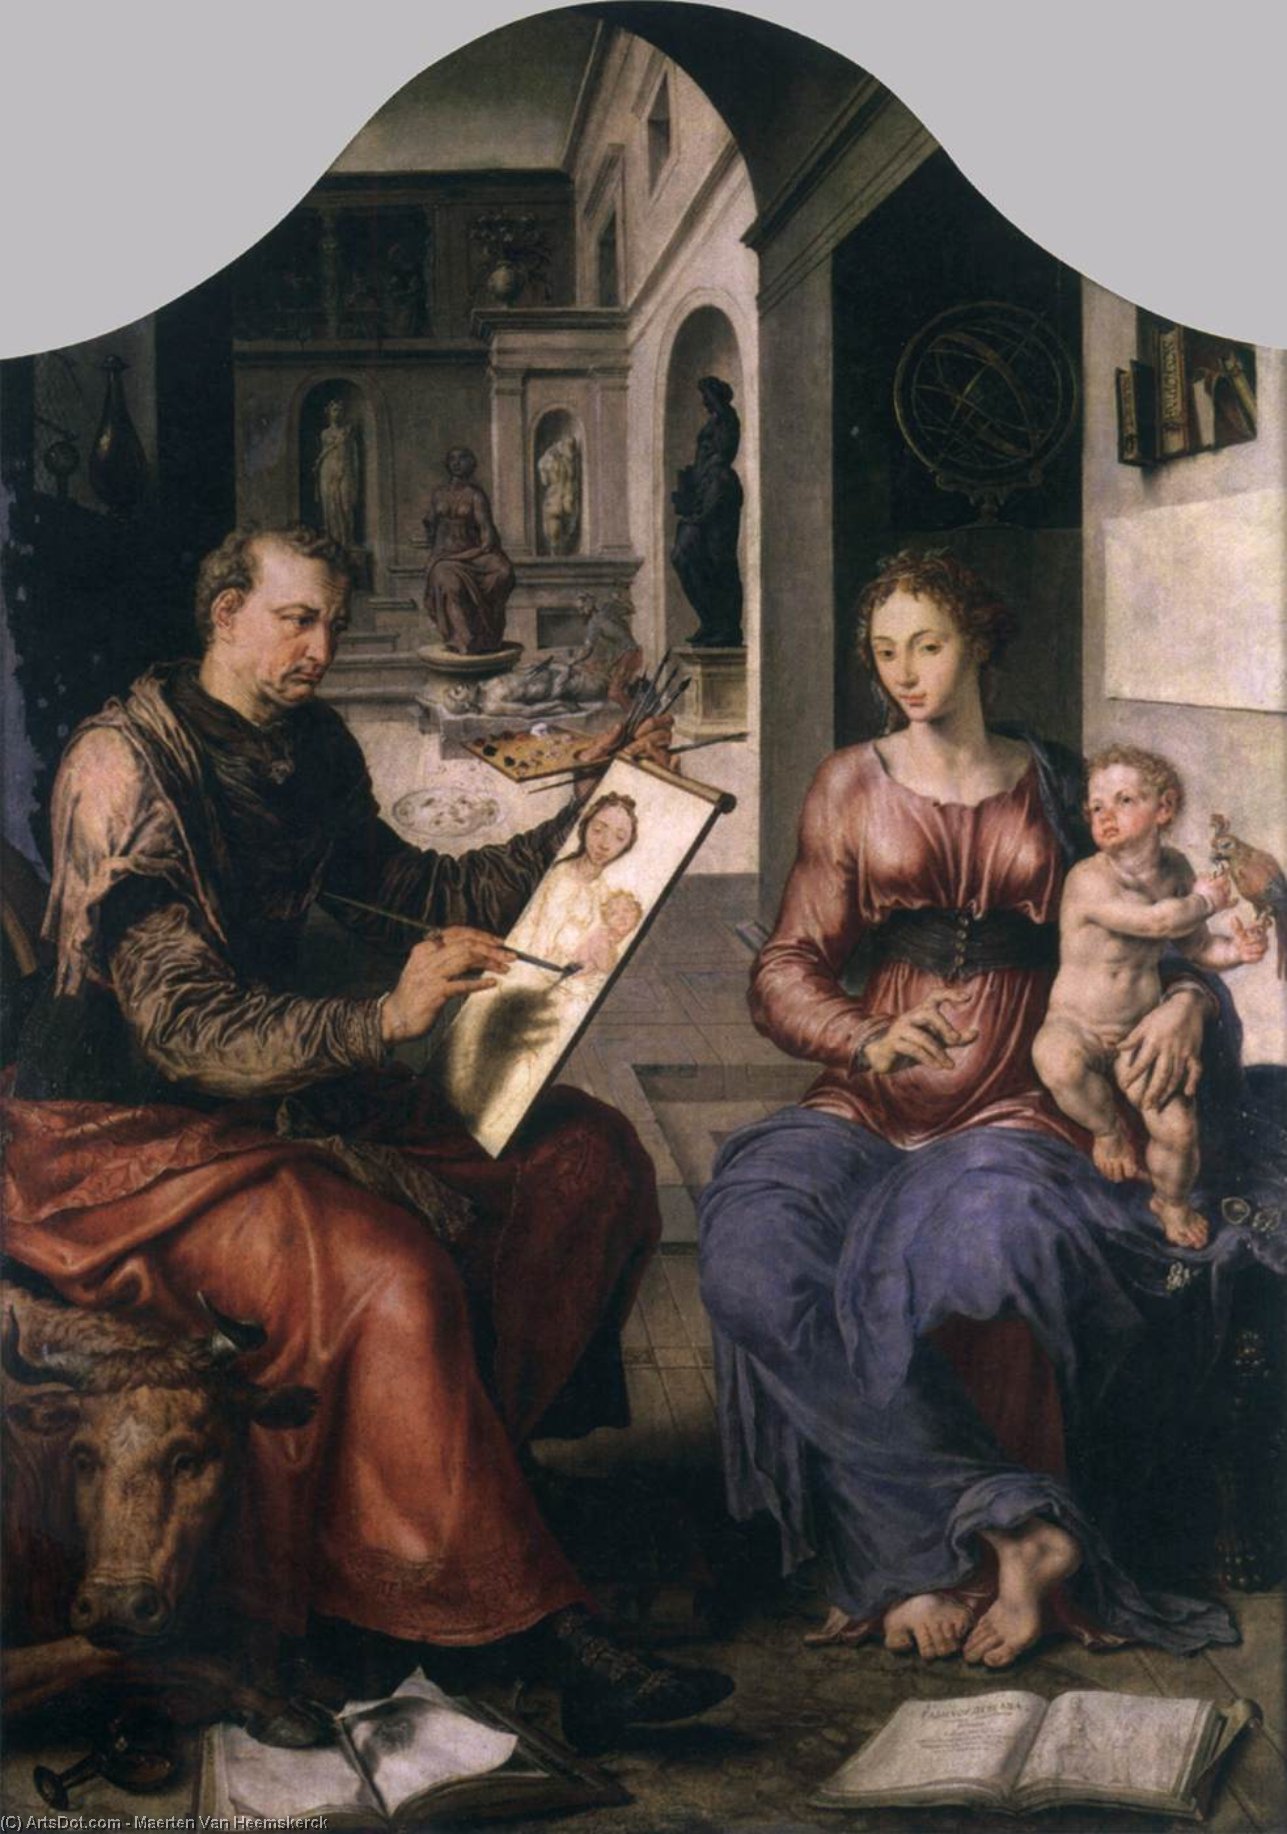 WikiOO.org - Encyclopedia of Fine Arts - Lukisan, Artwork Maarten Van Heemskerck - St Luke Painting the Virgin